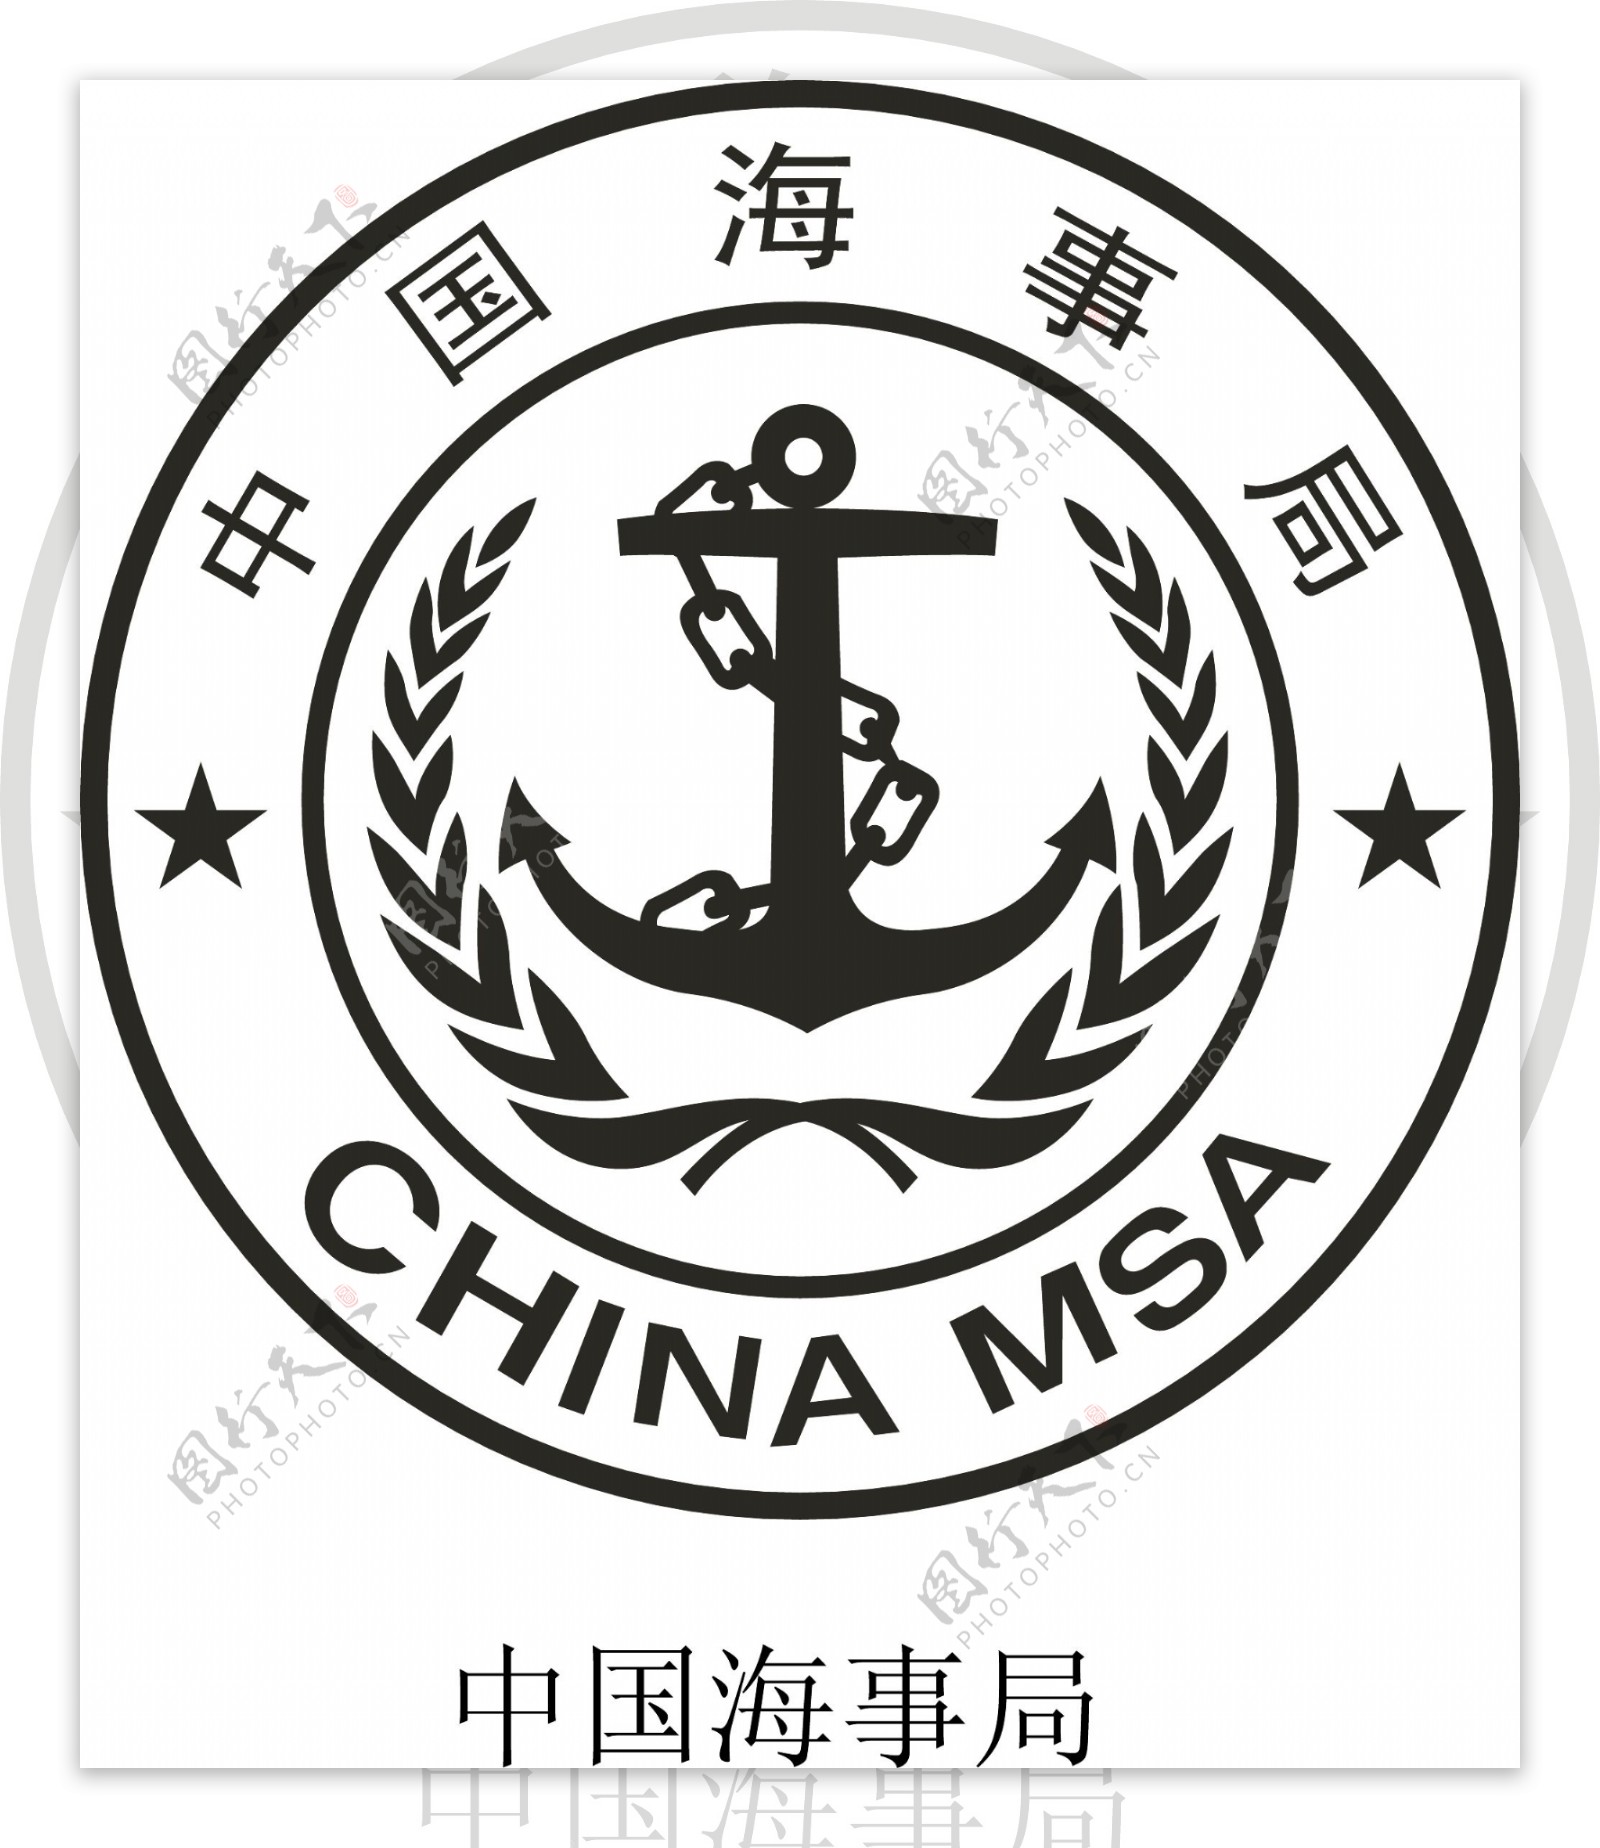 中国海事局图标LOGO图片